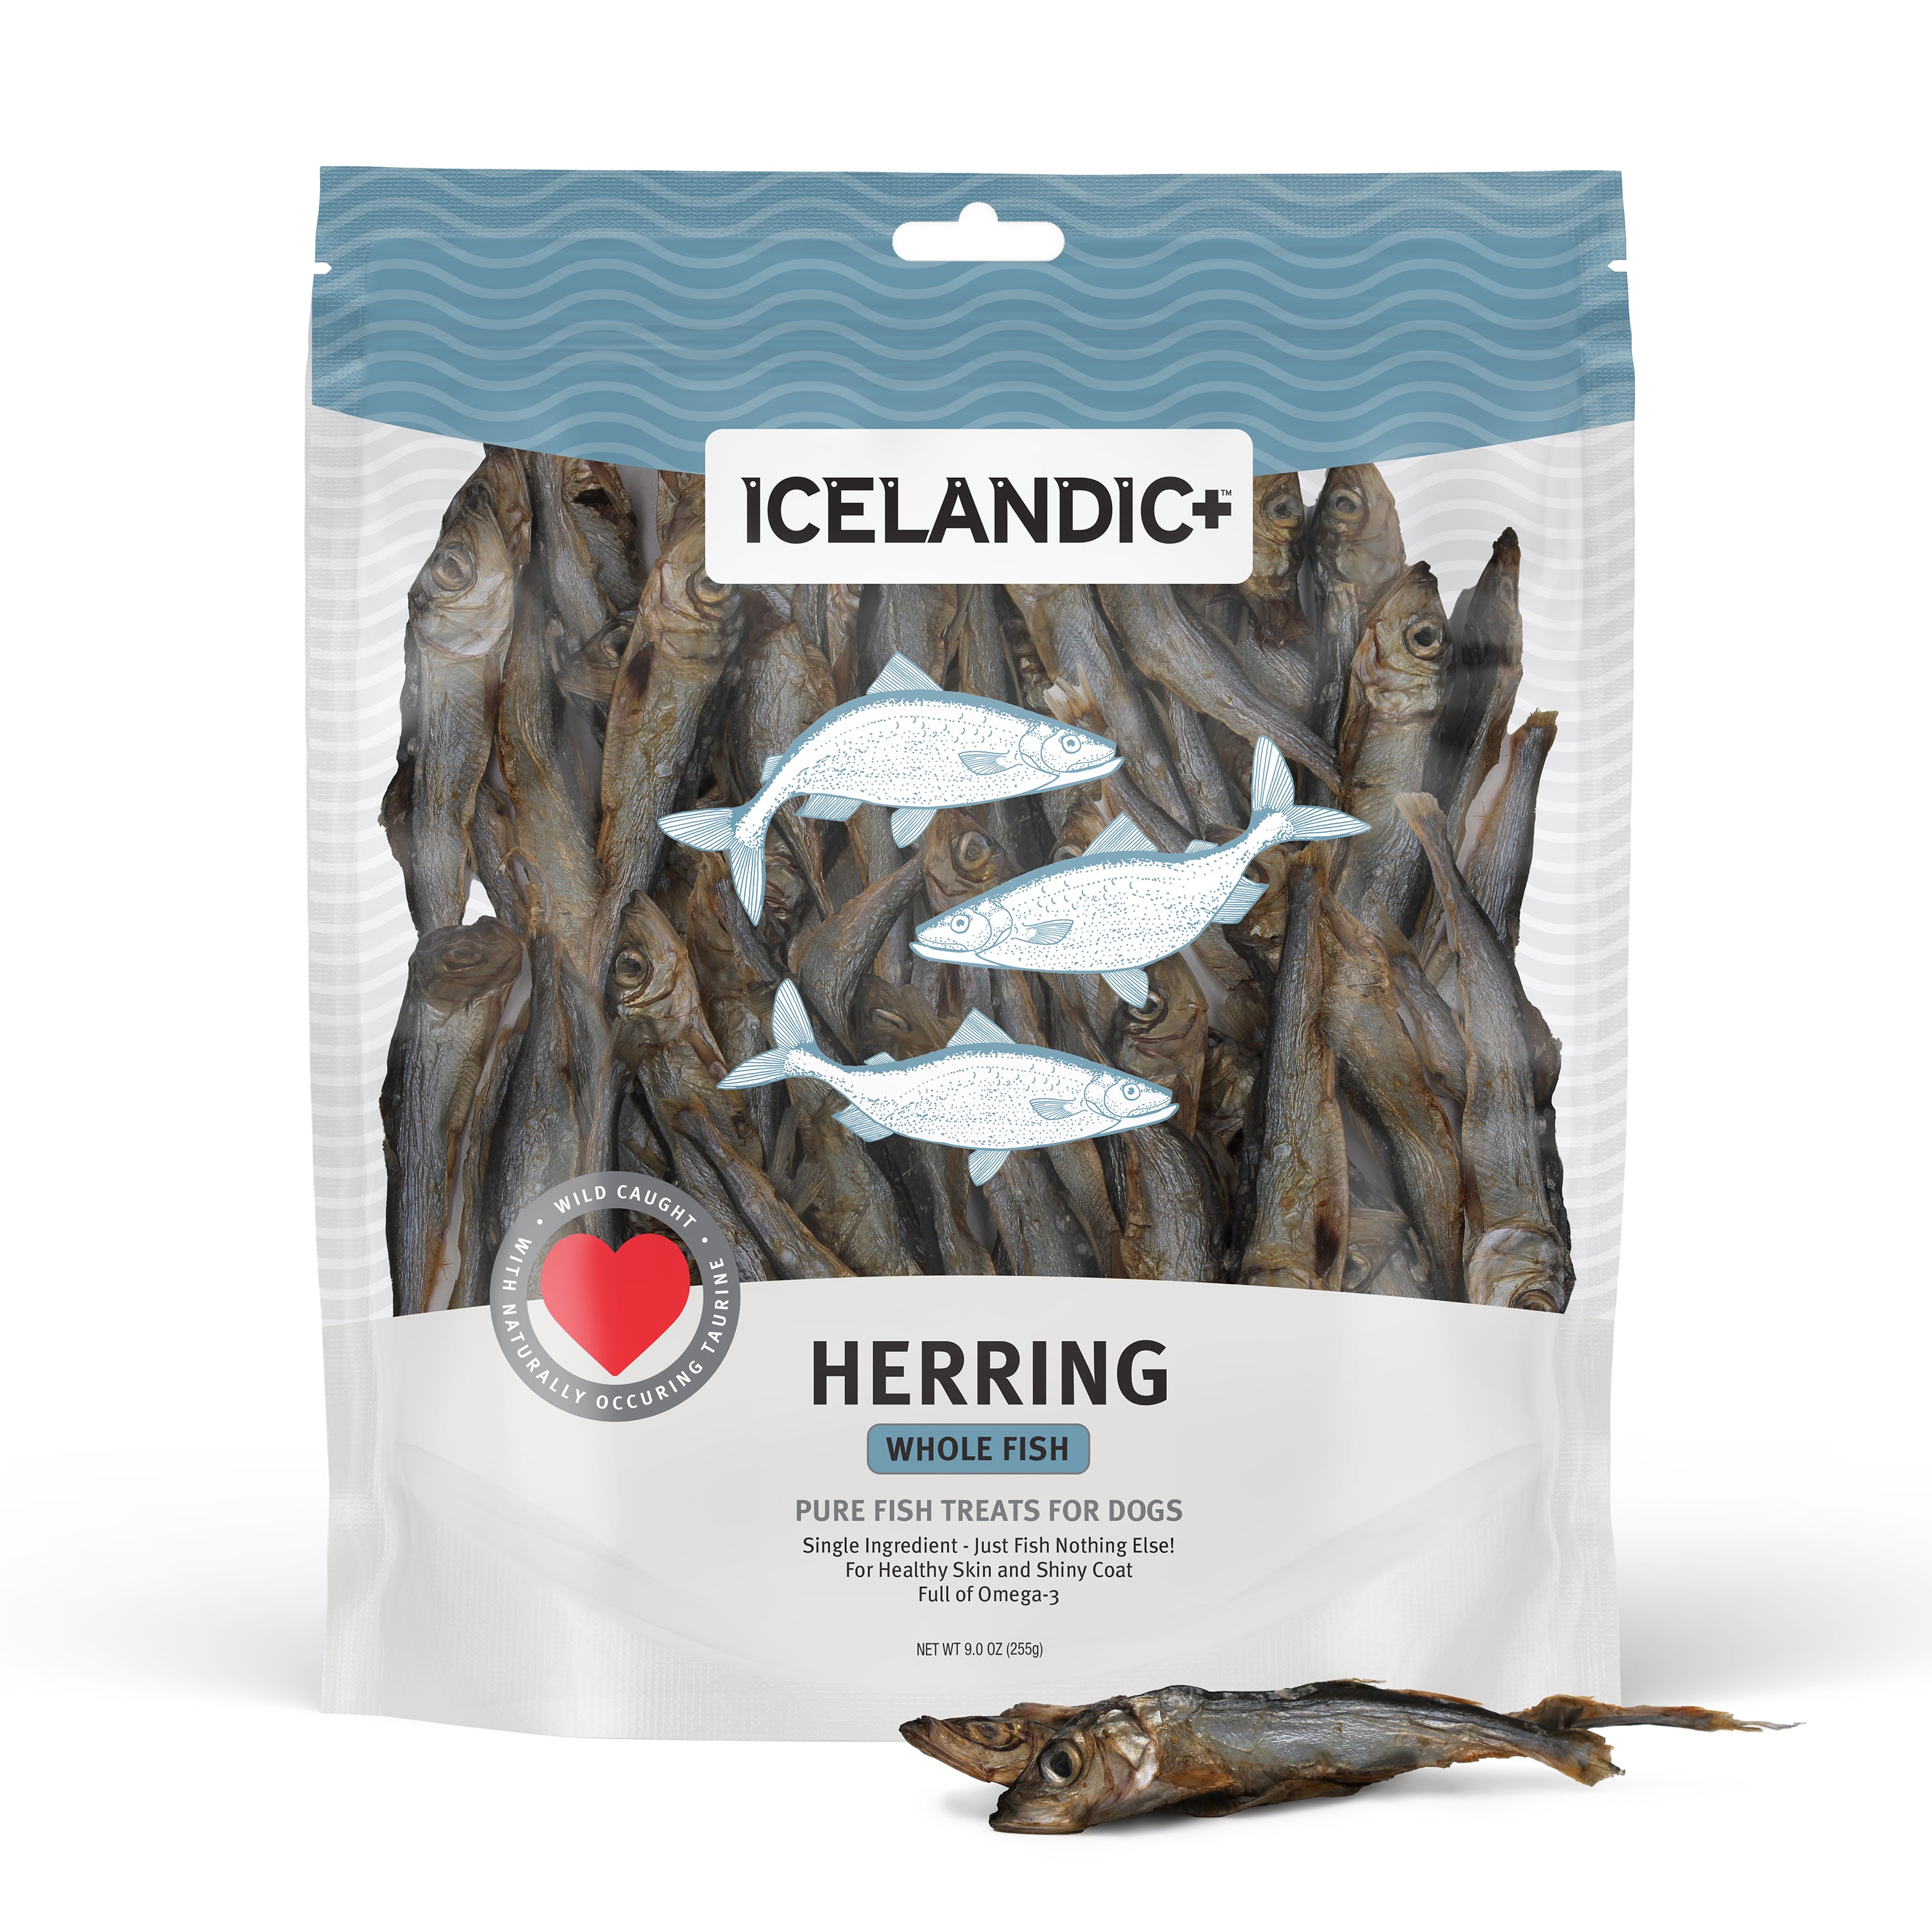 Icelandic+ Dog Herring Fish Whole 3oz